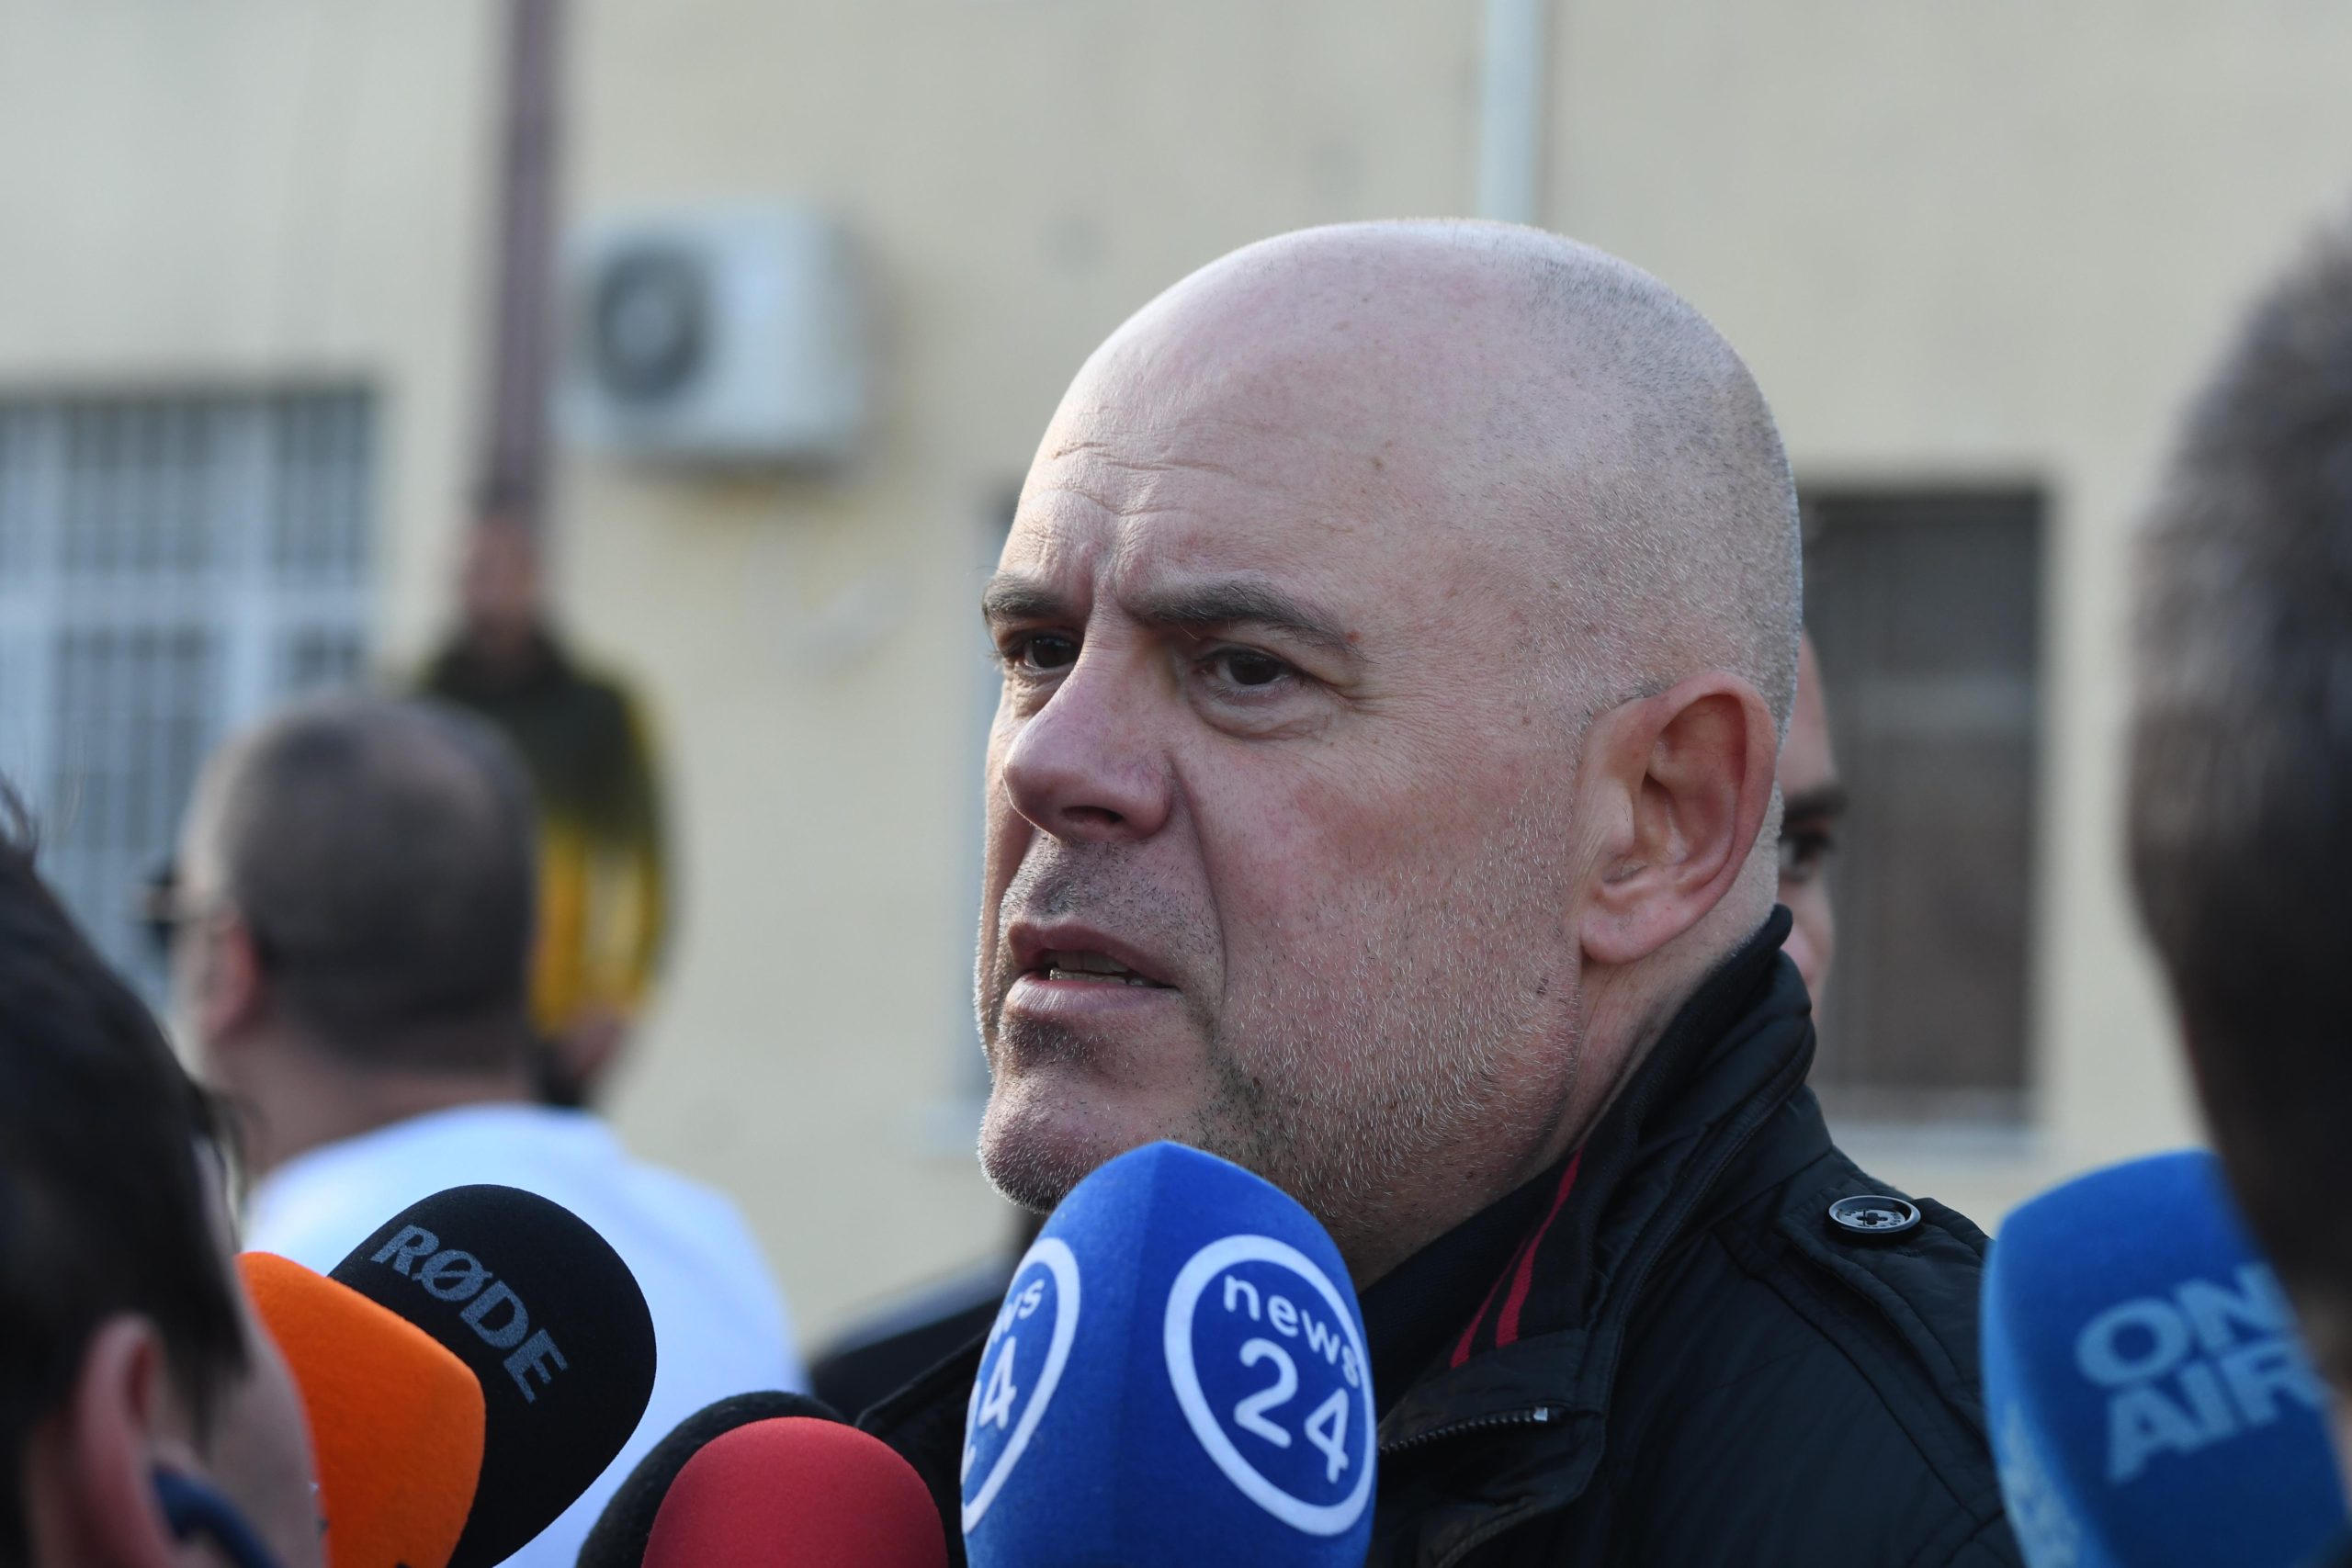 Българските прокурори са обвинили петима души за подпомагане на терористични